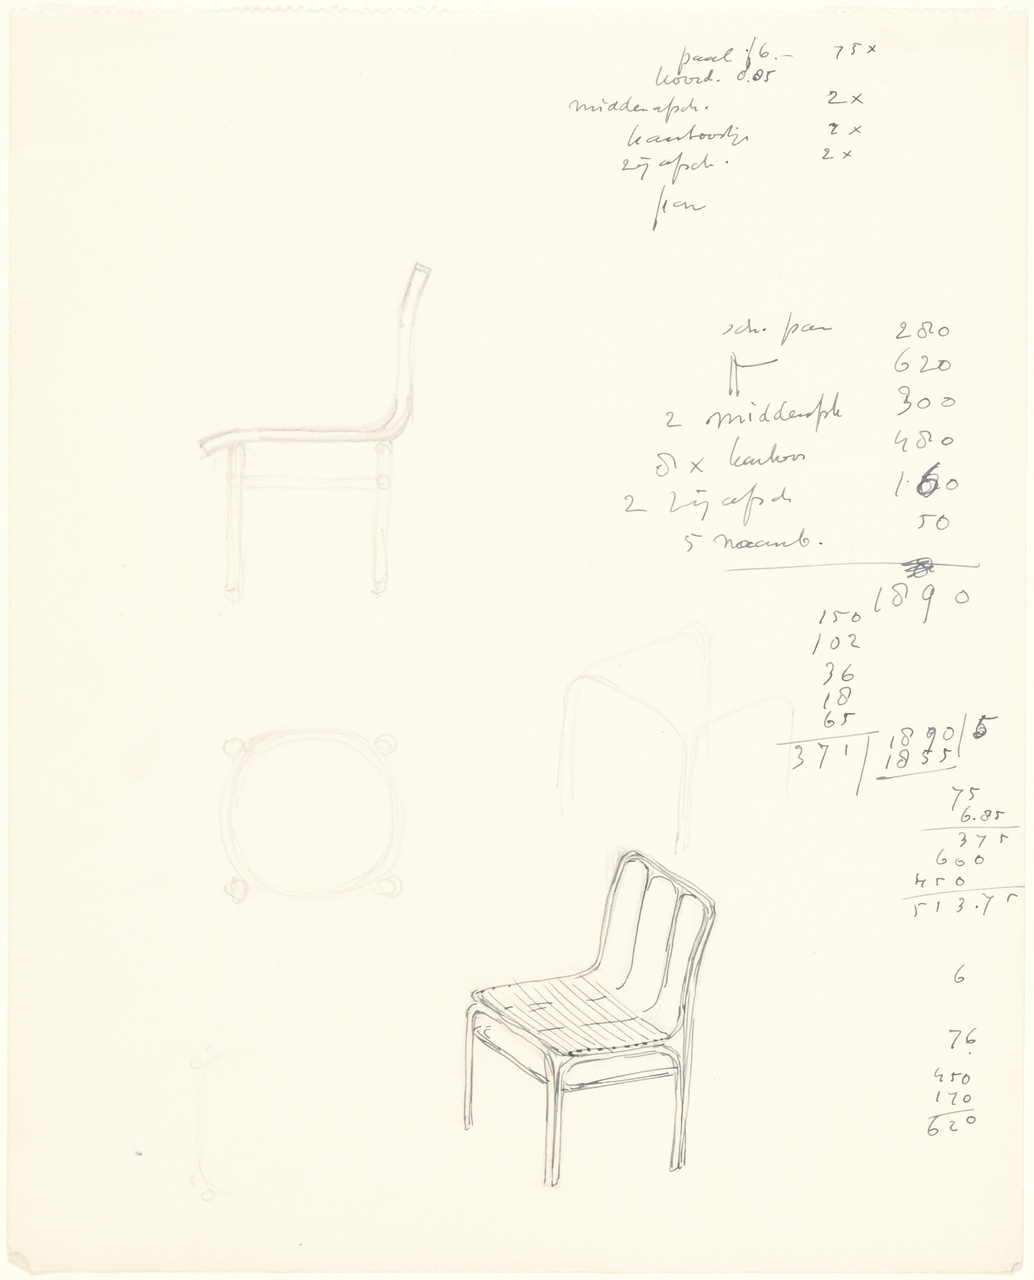 Ontwerpen stoelen (stoel met drie gebogen stijlen in de rugleuning)